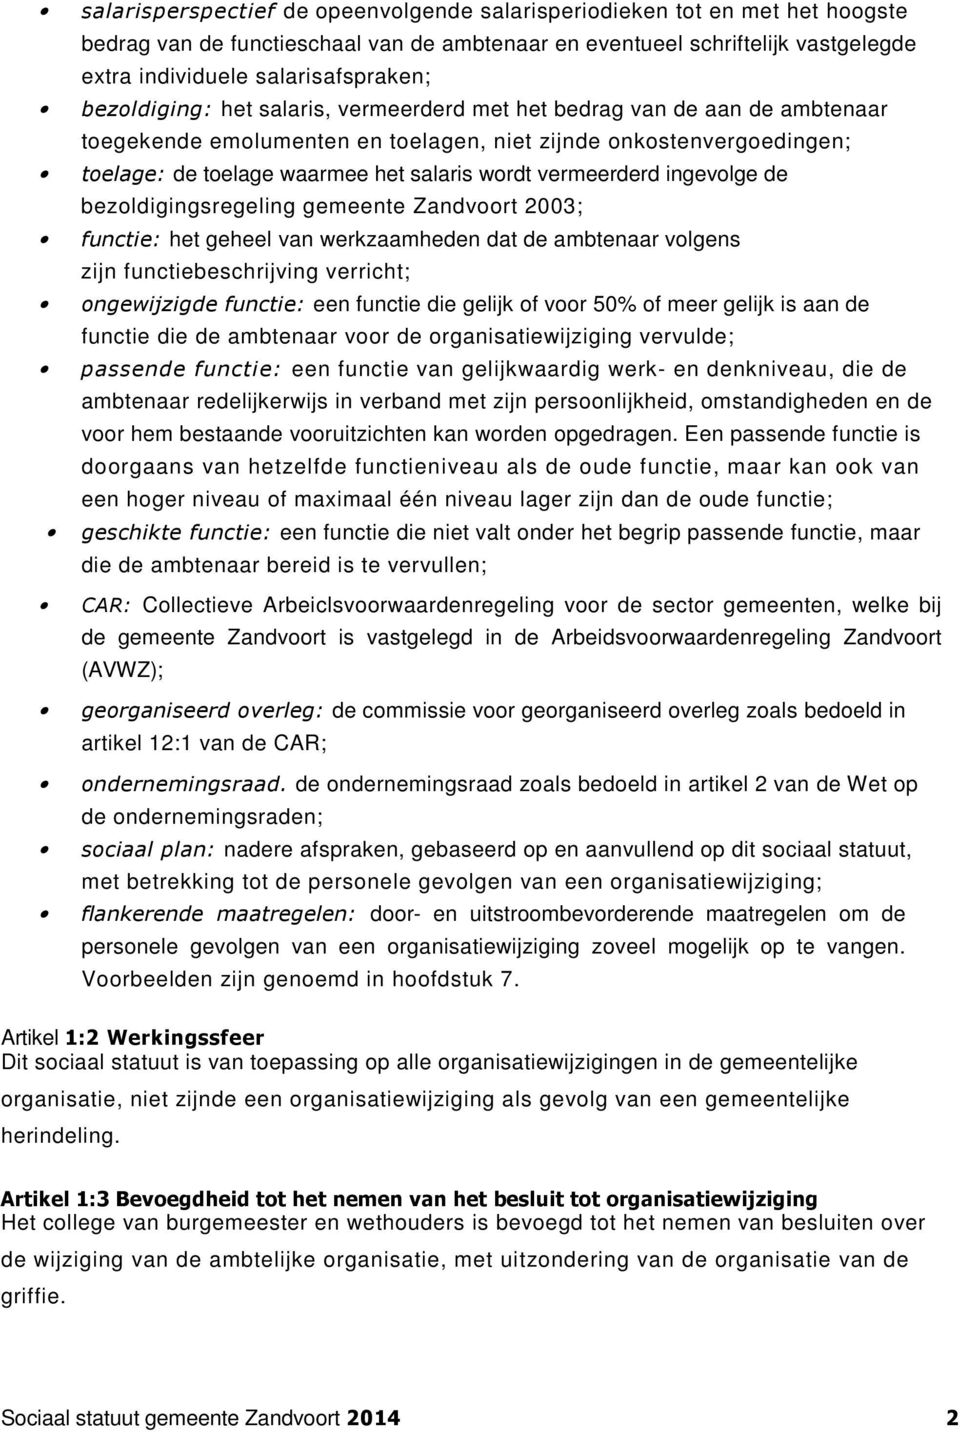 vermeerderd ingevolge de bezoldigingsregeling gemeente Zandvoort 2003; functie: het geheel van werkzaamheden dat de ambtenaar volgens zijn functiebeschrijving verricht; ongewijzigde functie: een